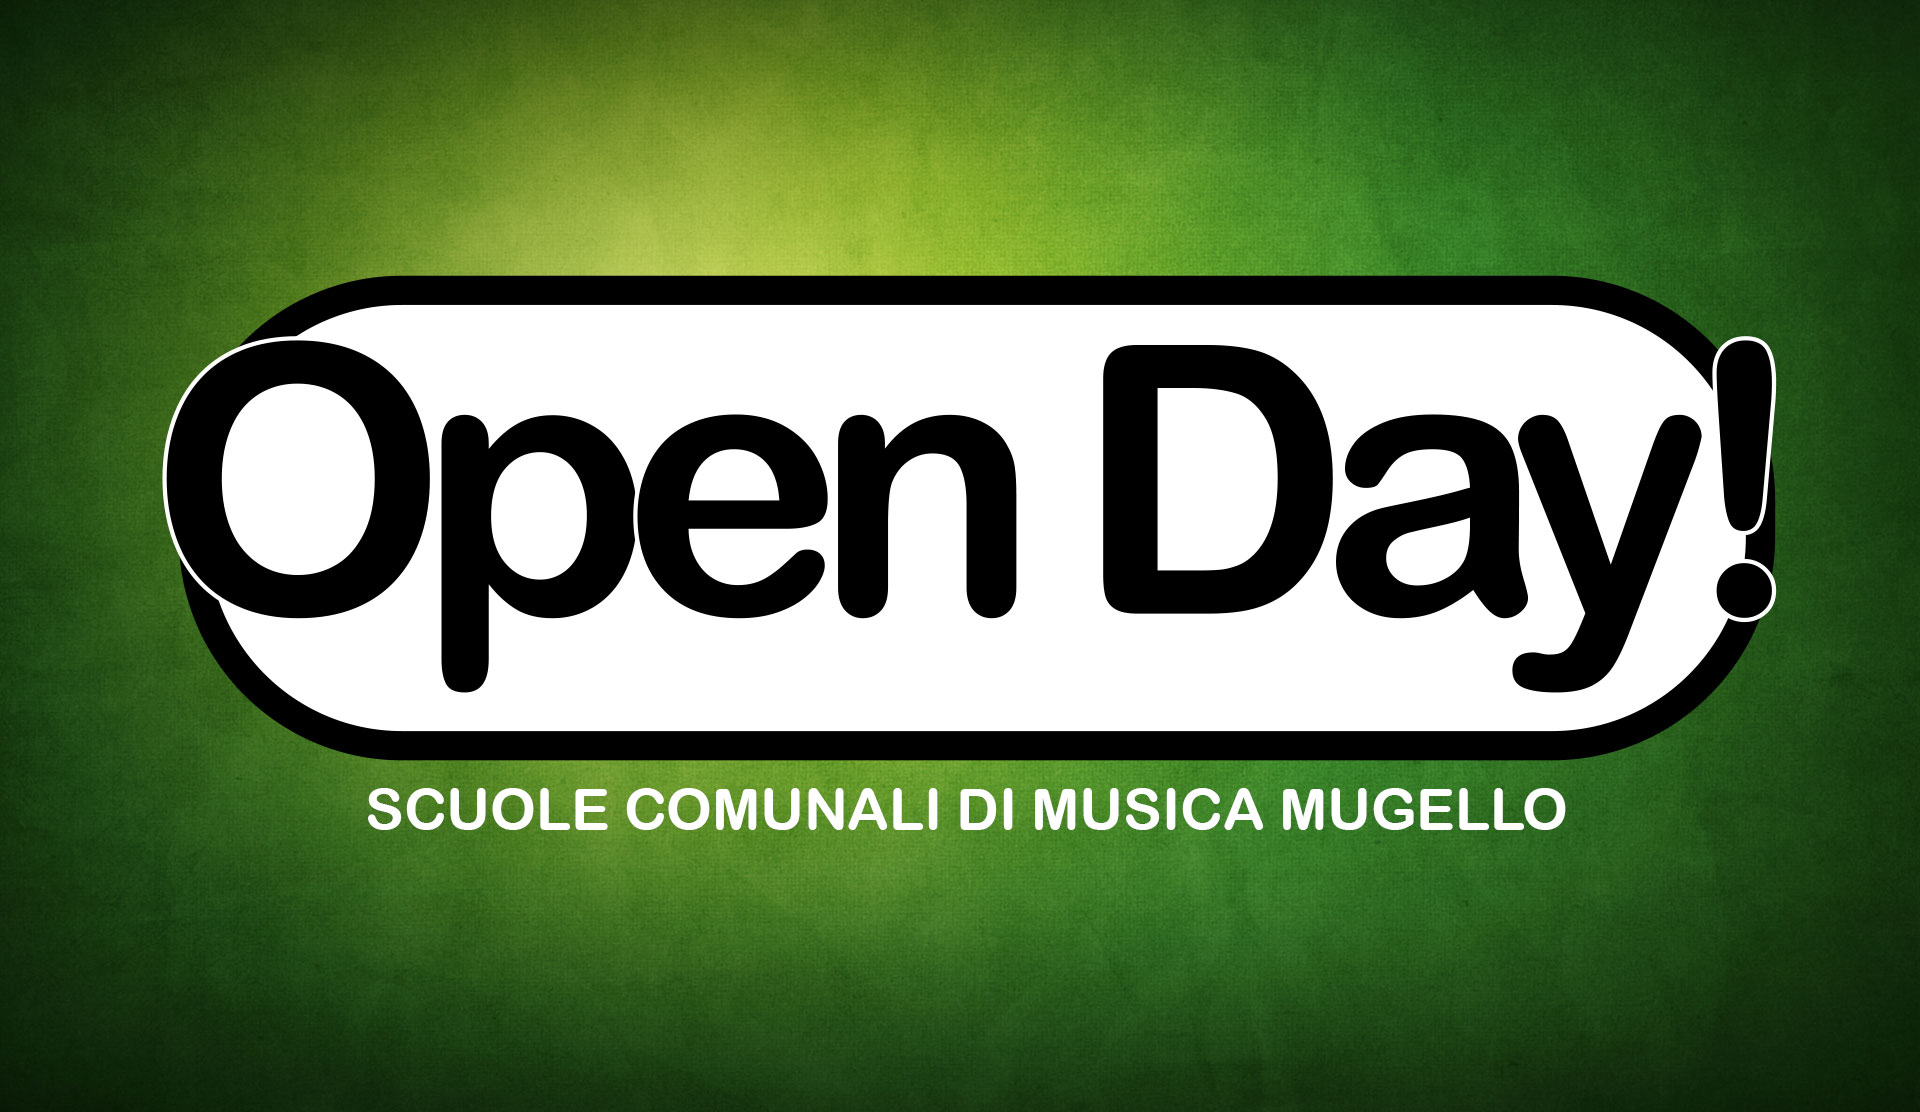 Open Day Scuole Comunali di Musica Mugello 2015